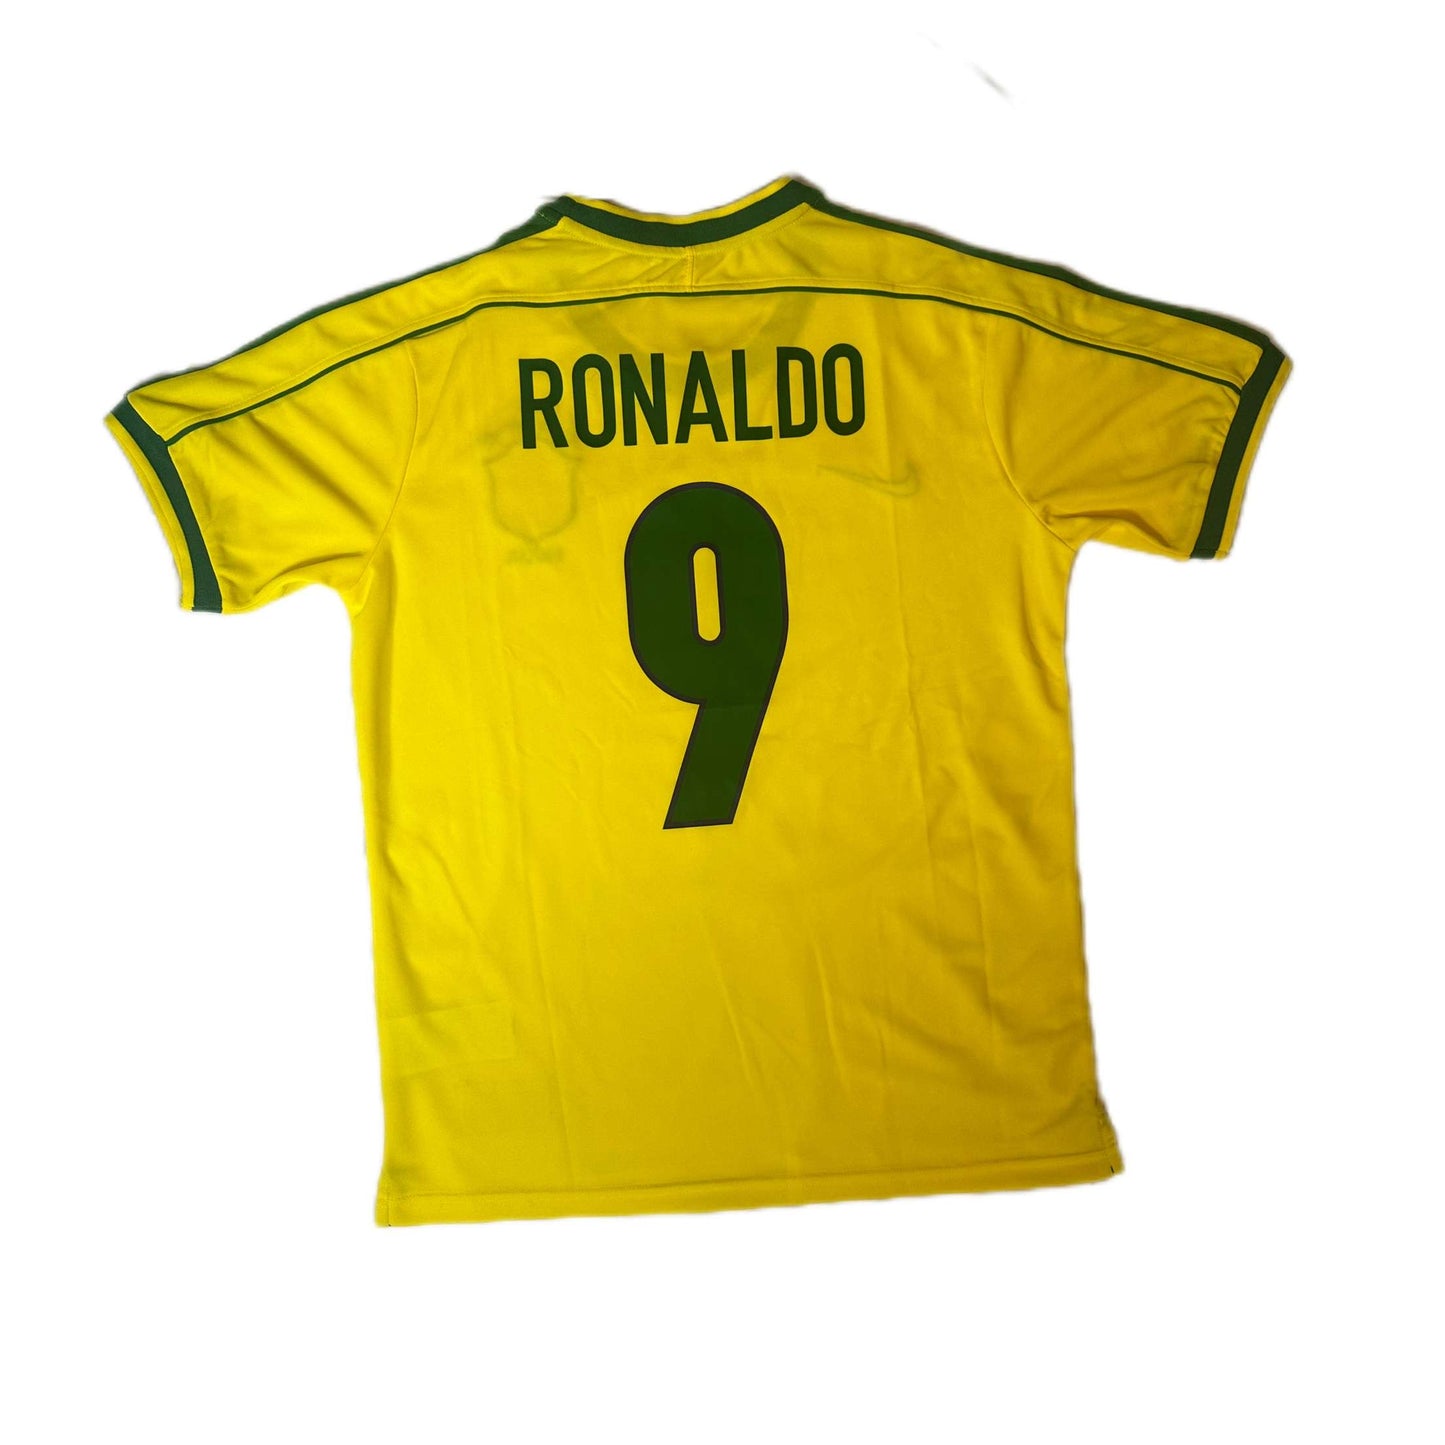 Brazil 1998 home shirt